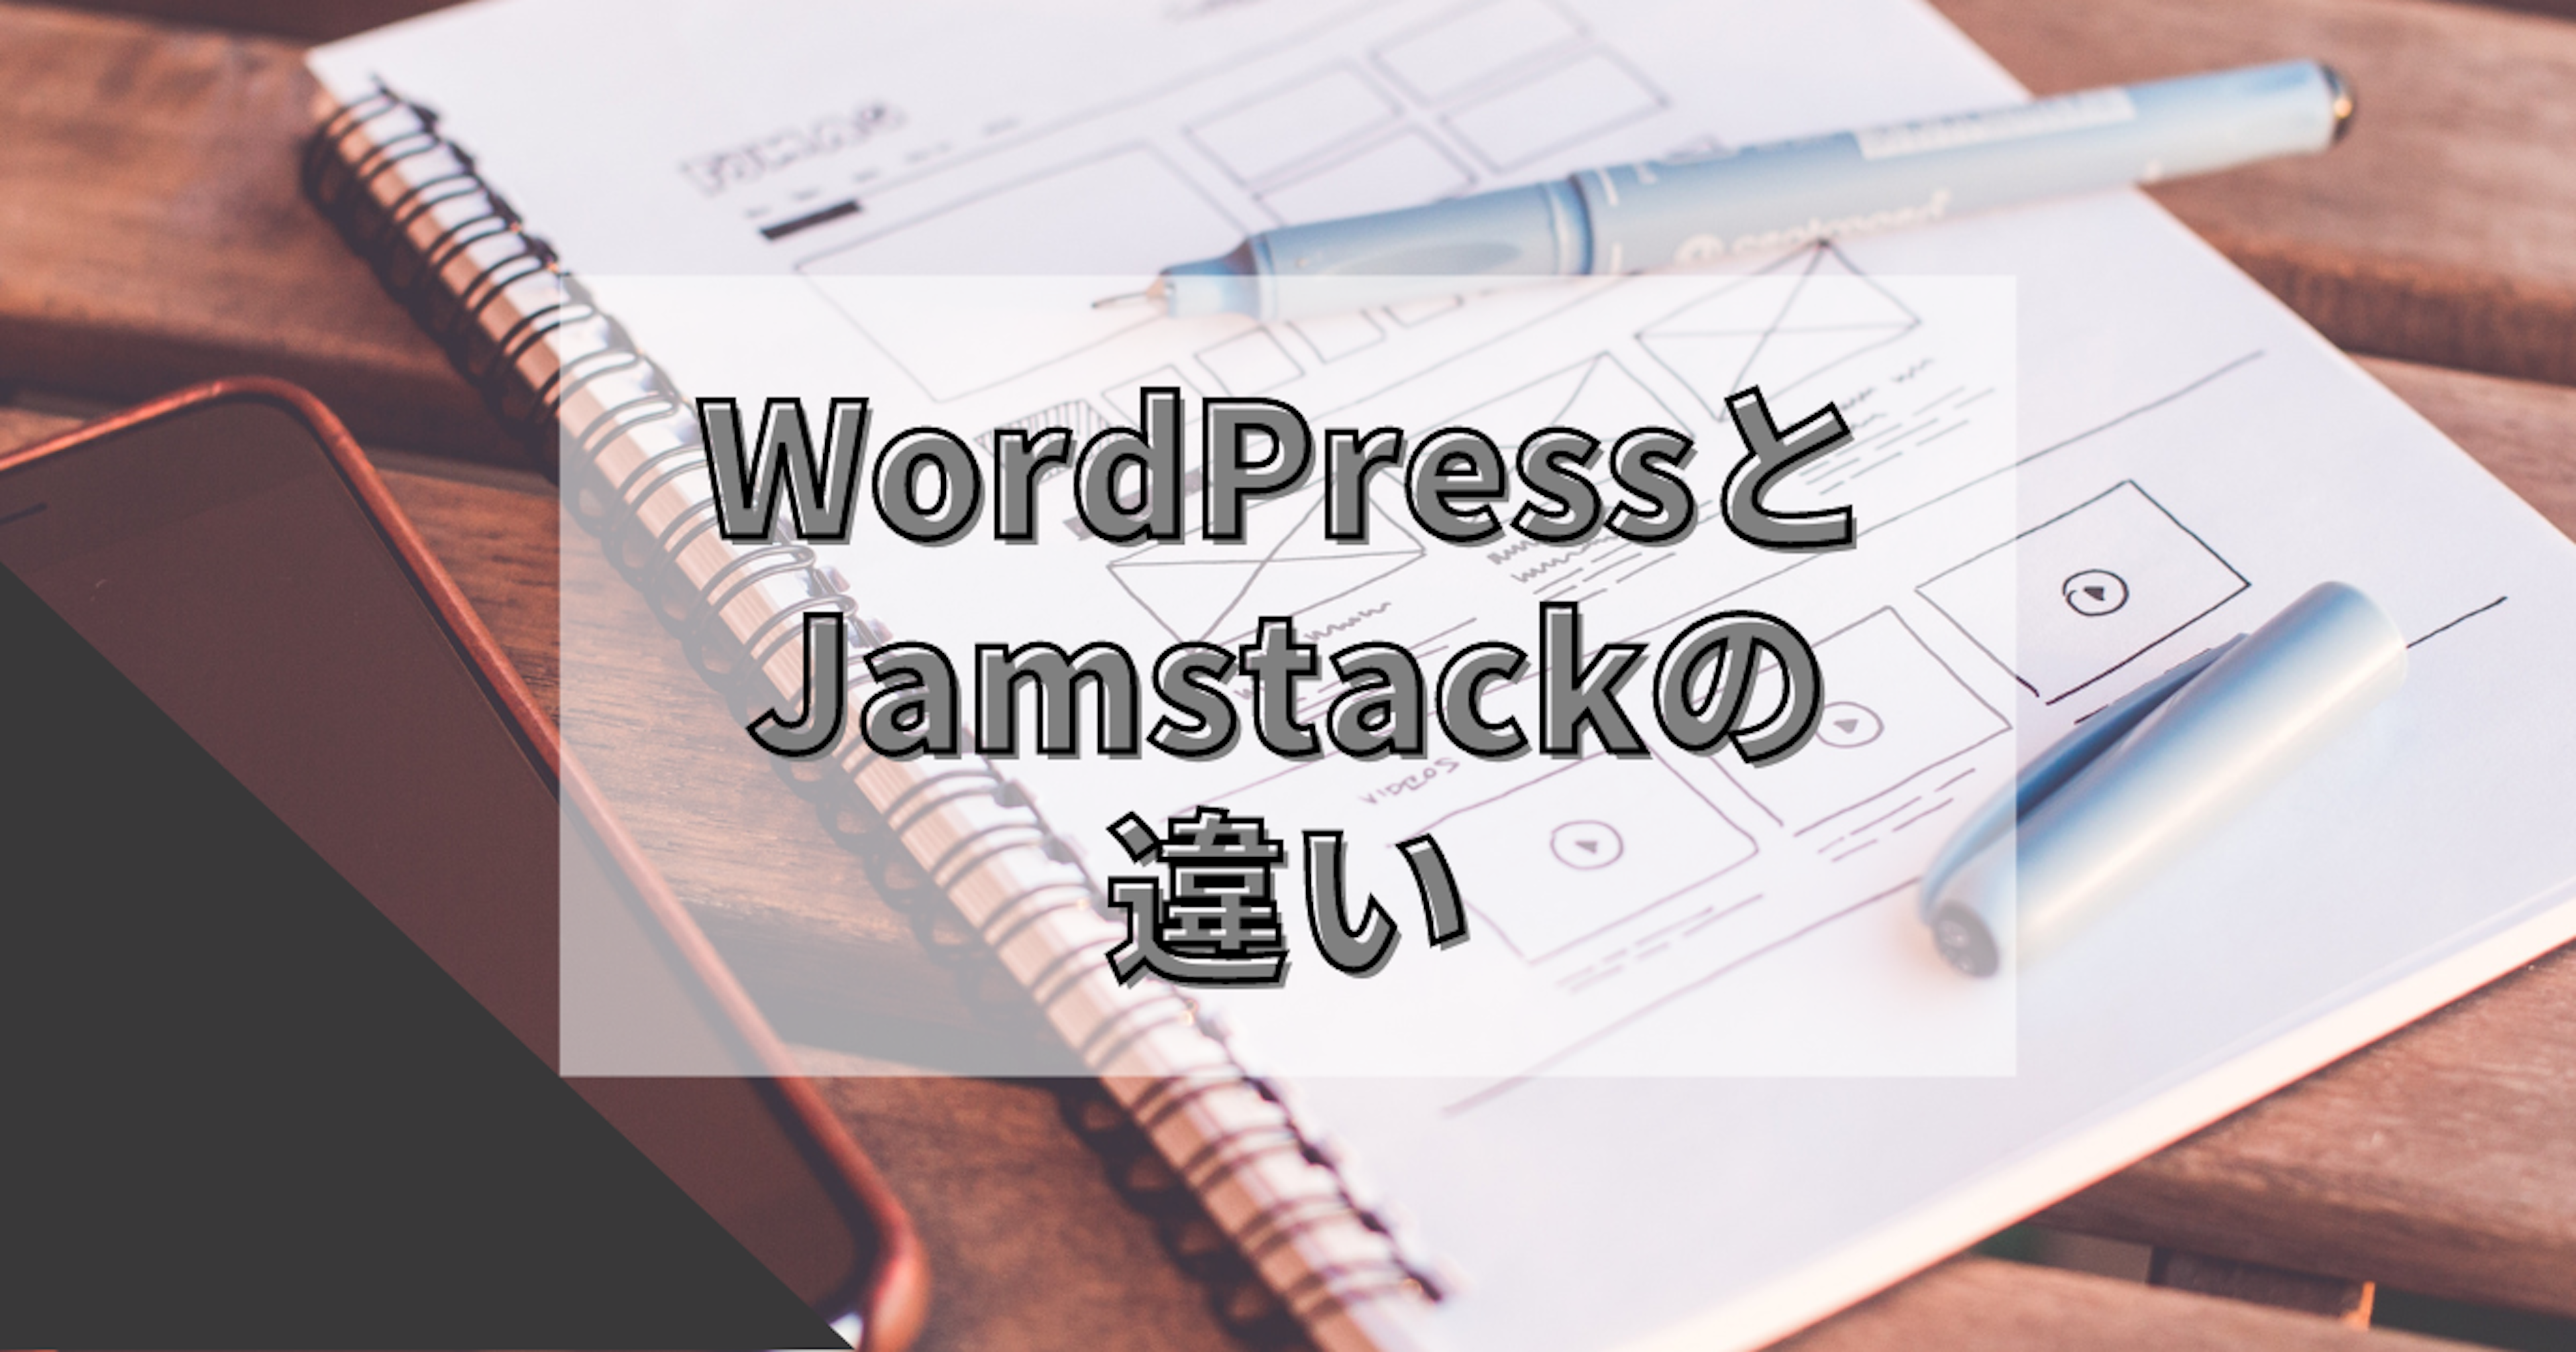 WordPressとJamstackの違いについて